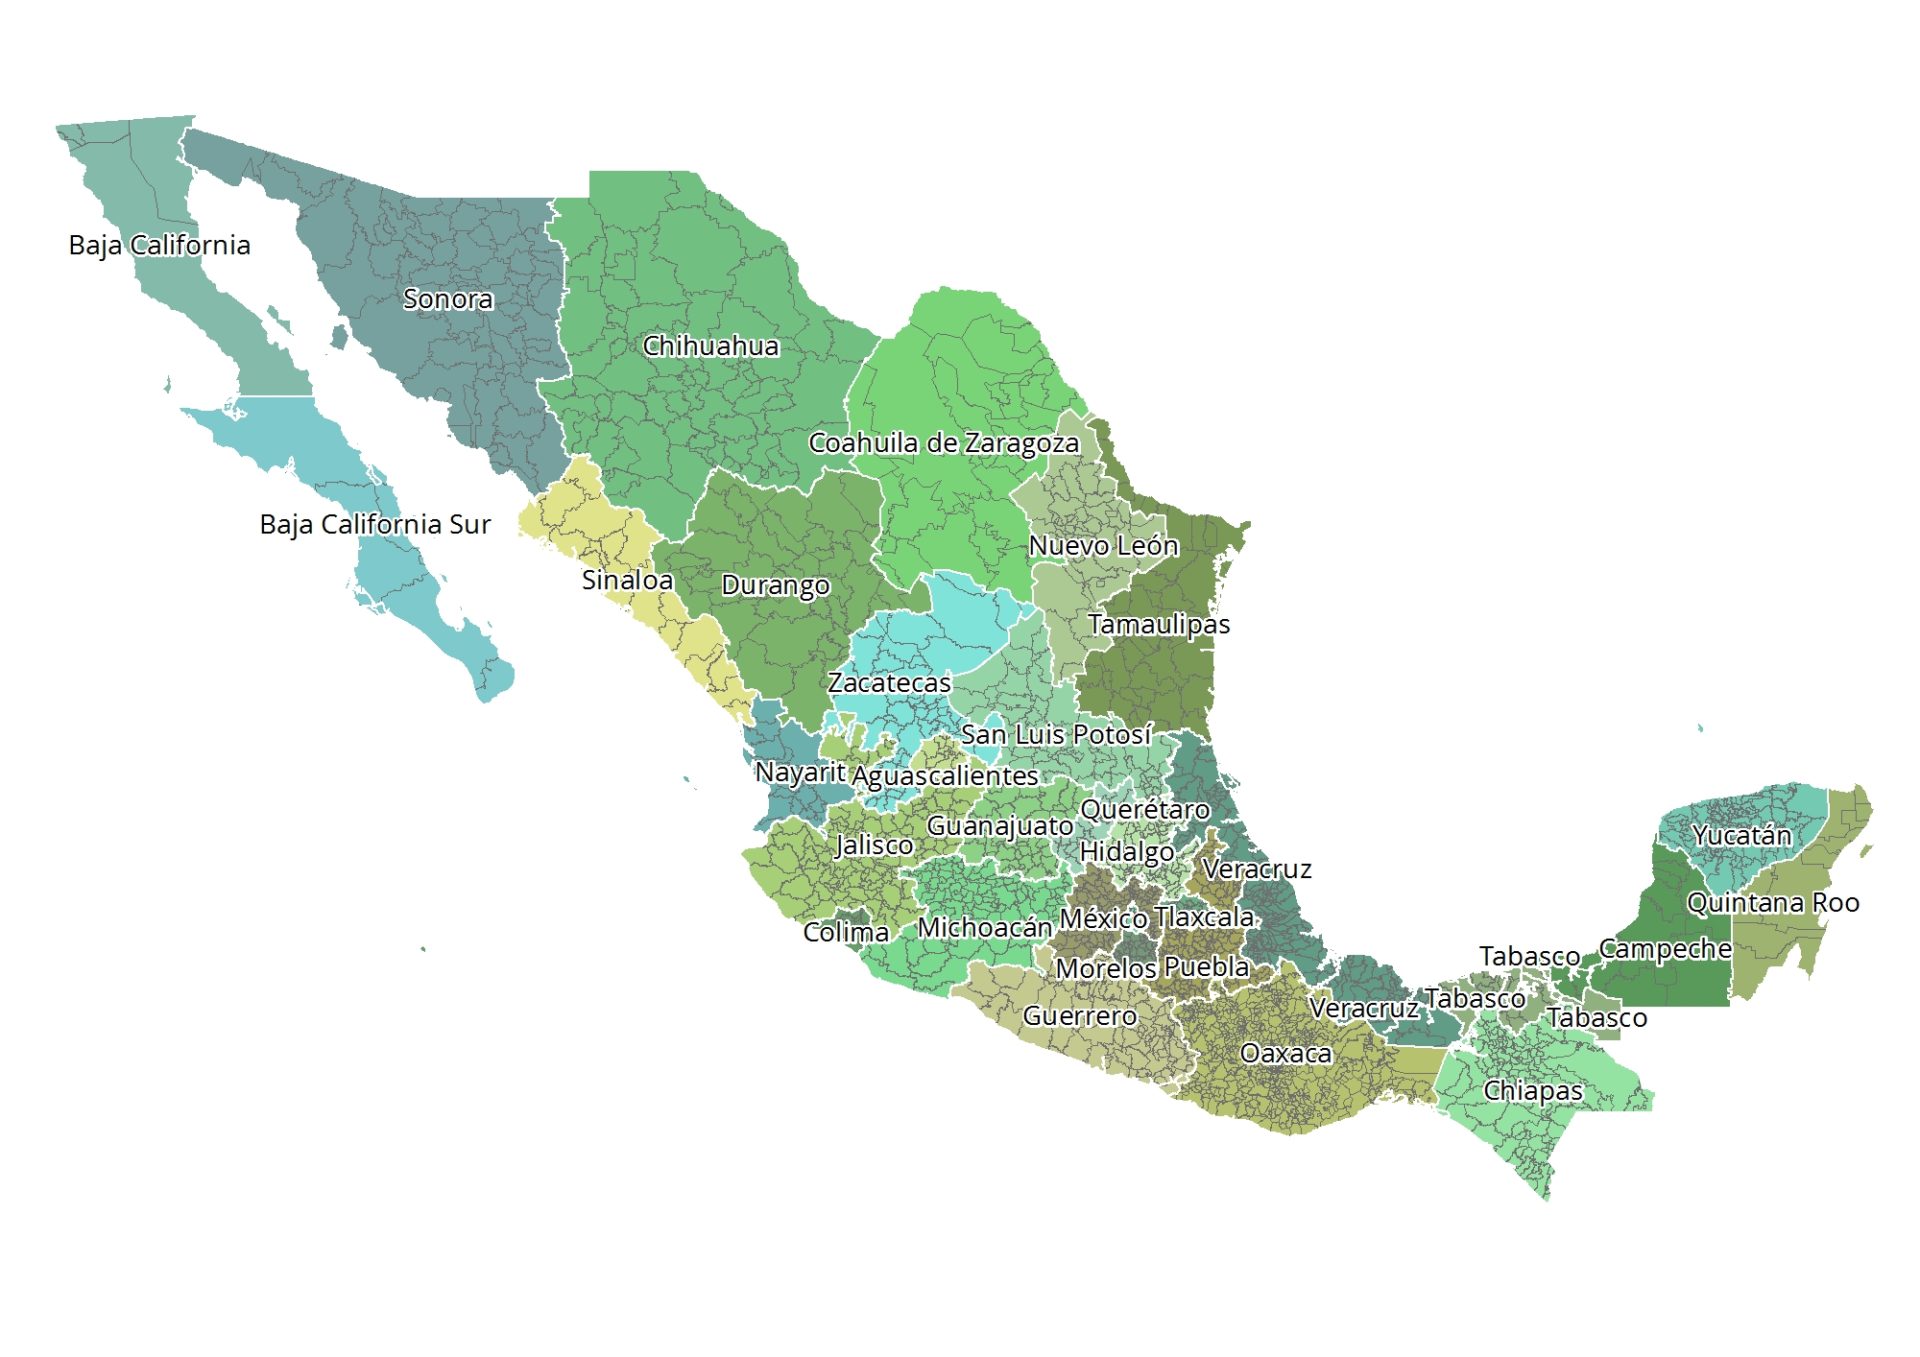 Die 32 Bundesstaaten (Estados) von Mexiko